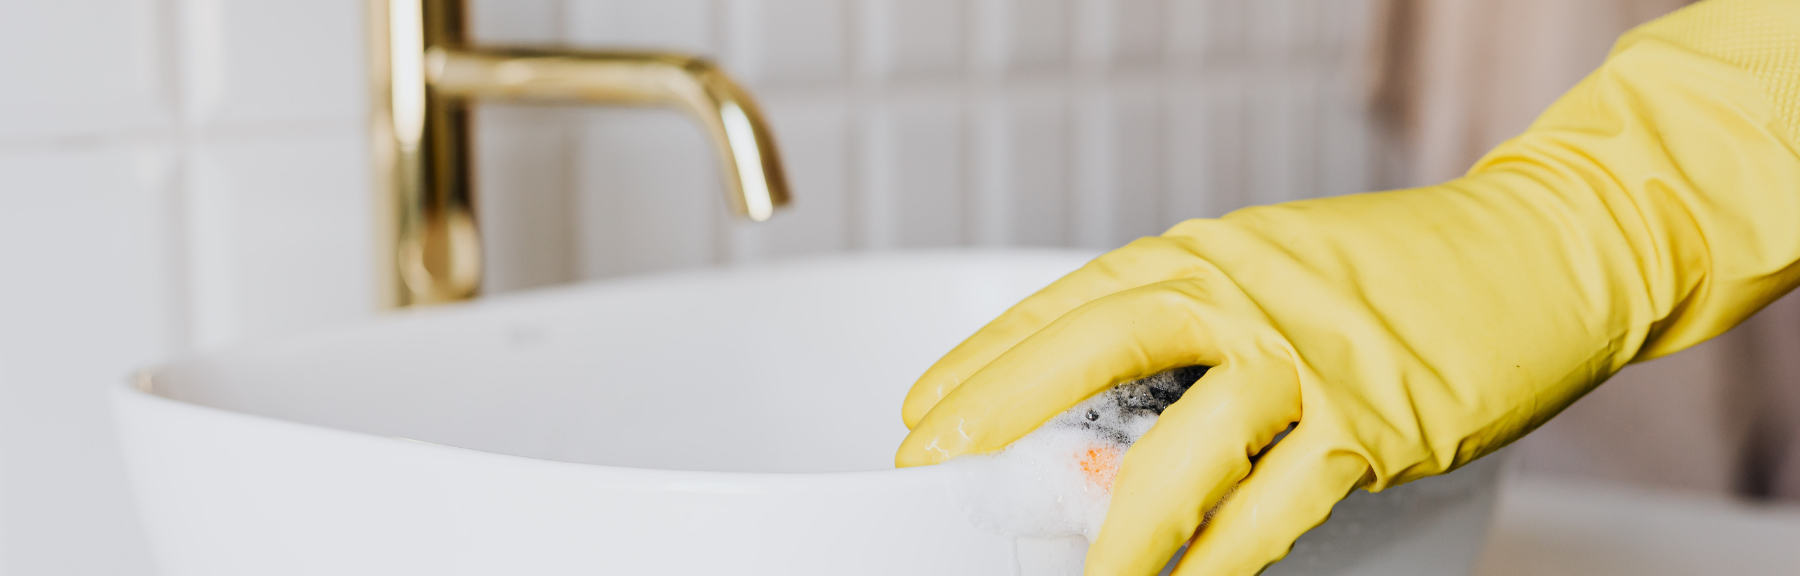 5 tips para limpiar el baño rápido y fácil